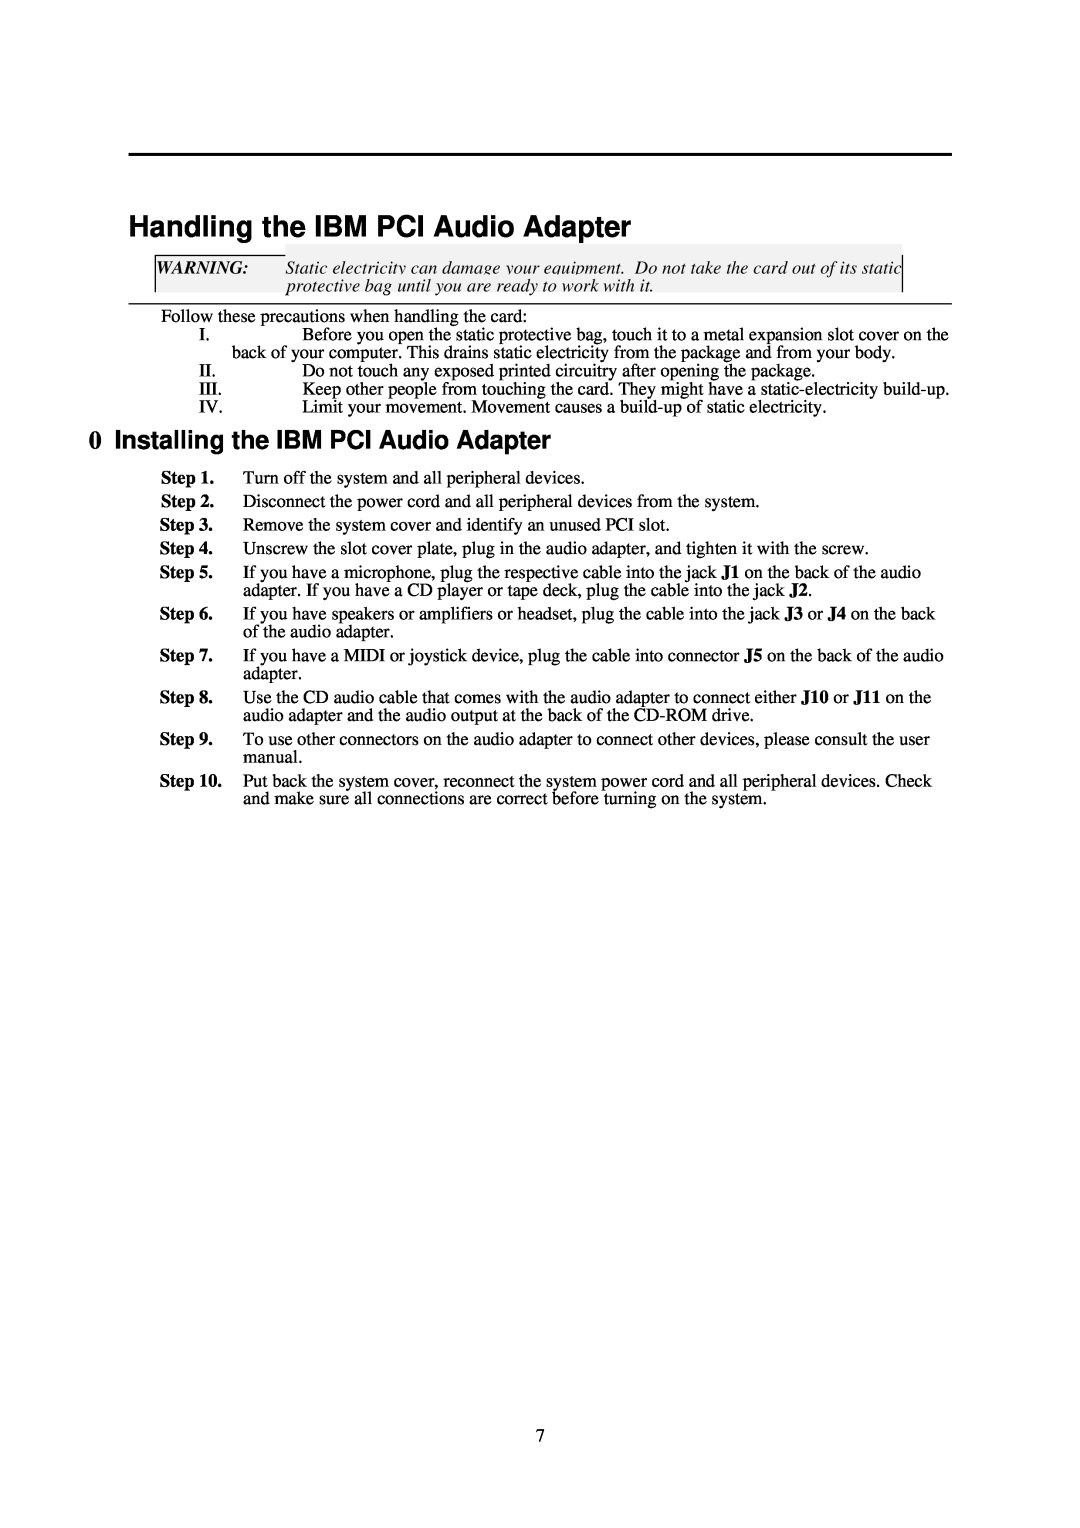 IBM L70 manual Handling the IBM PCI Audio Adapter, Installing the IBM PCI Audio Adapter 